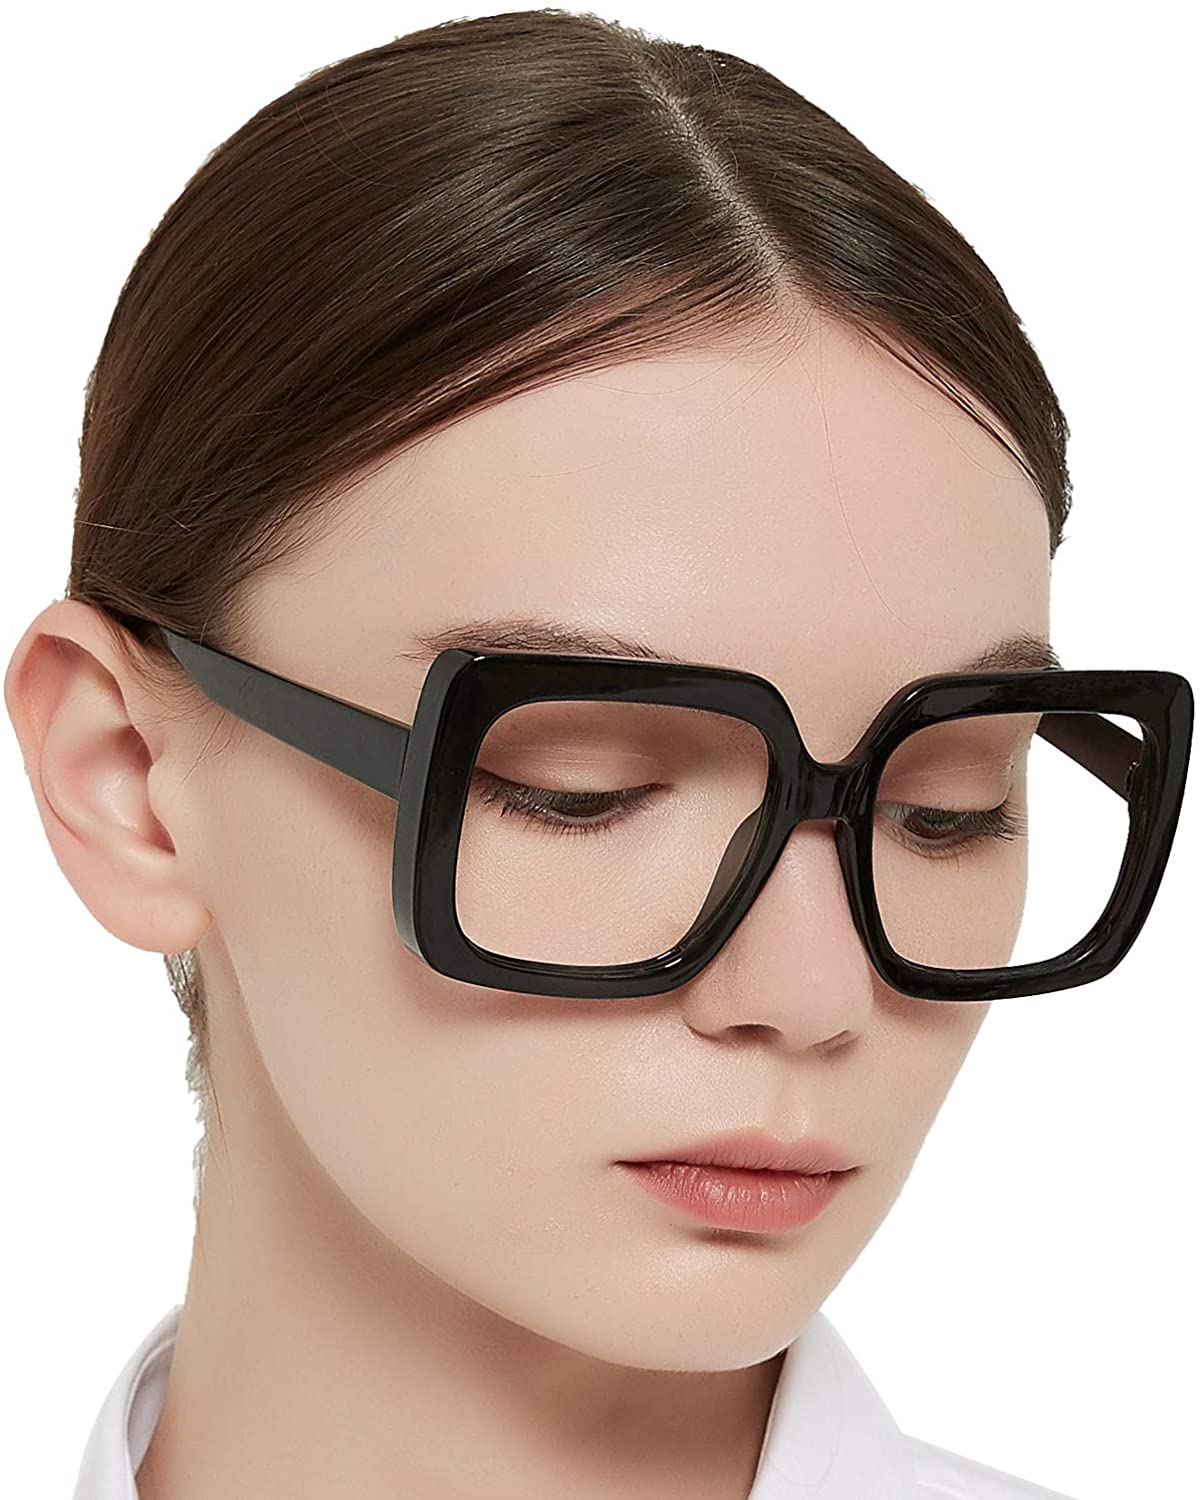 OCCI CHIARI Reading Glasses For Women Oversized Reader